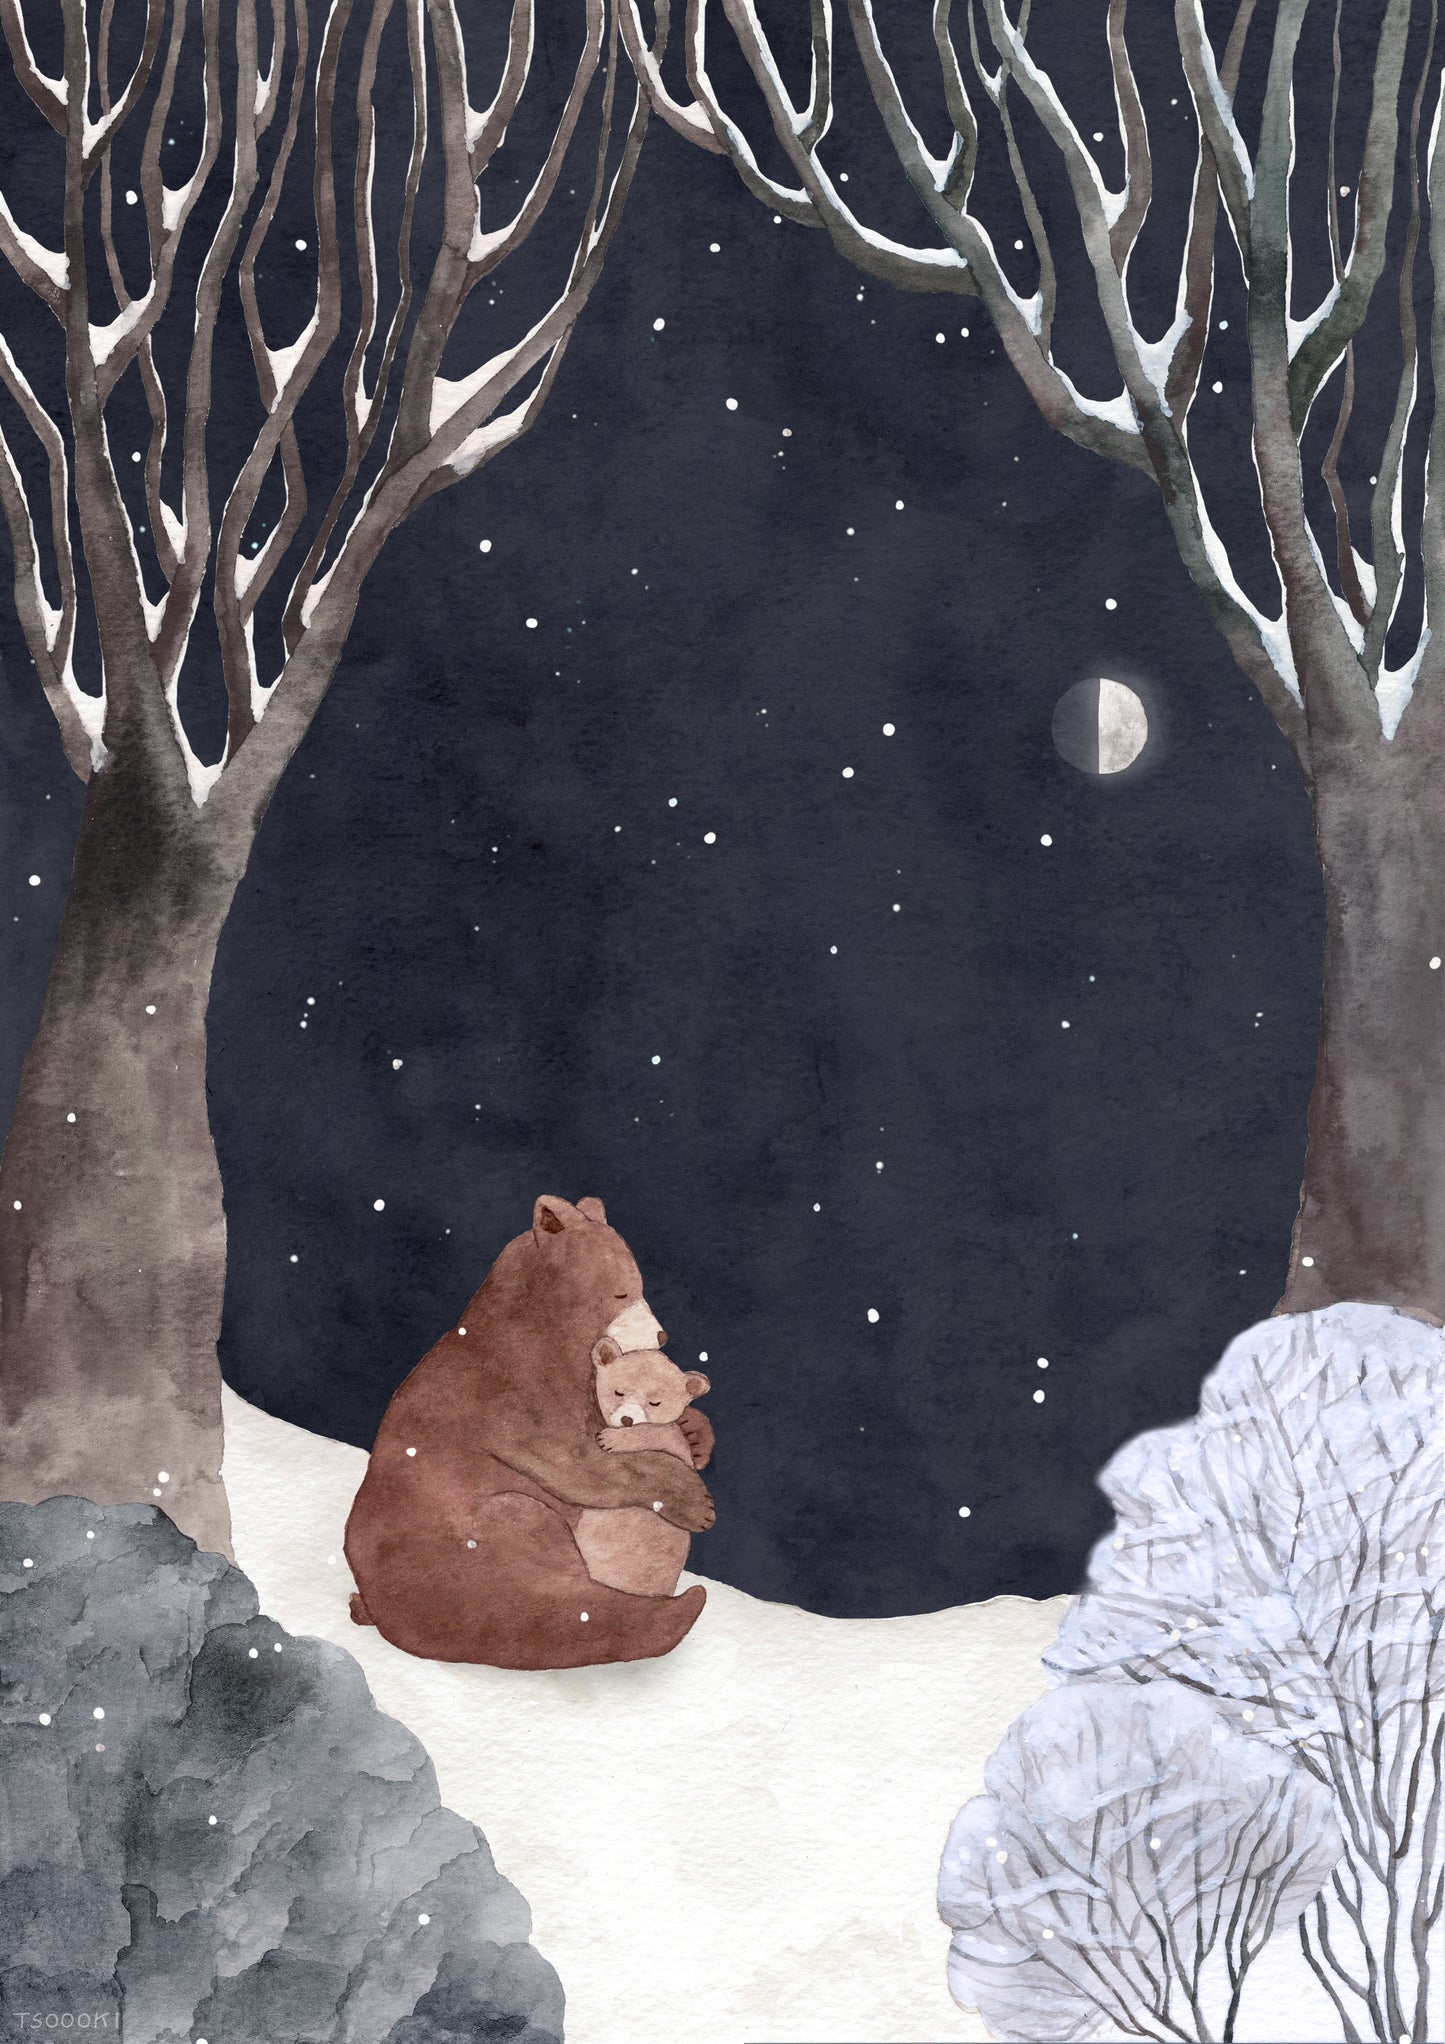 Winter Forest Art Print